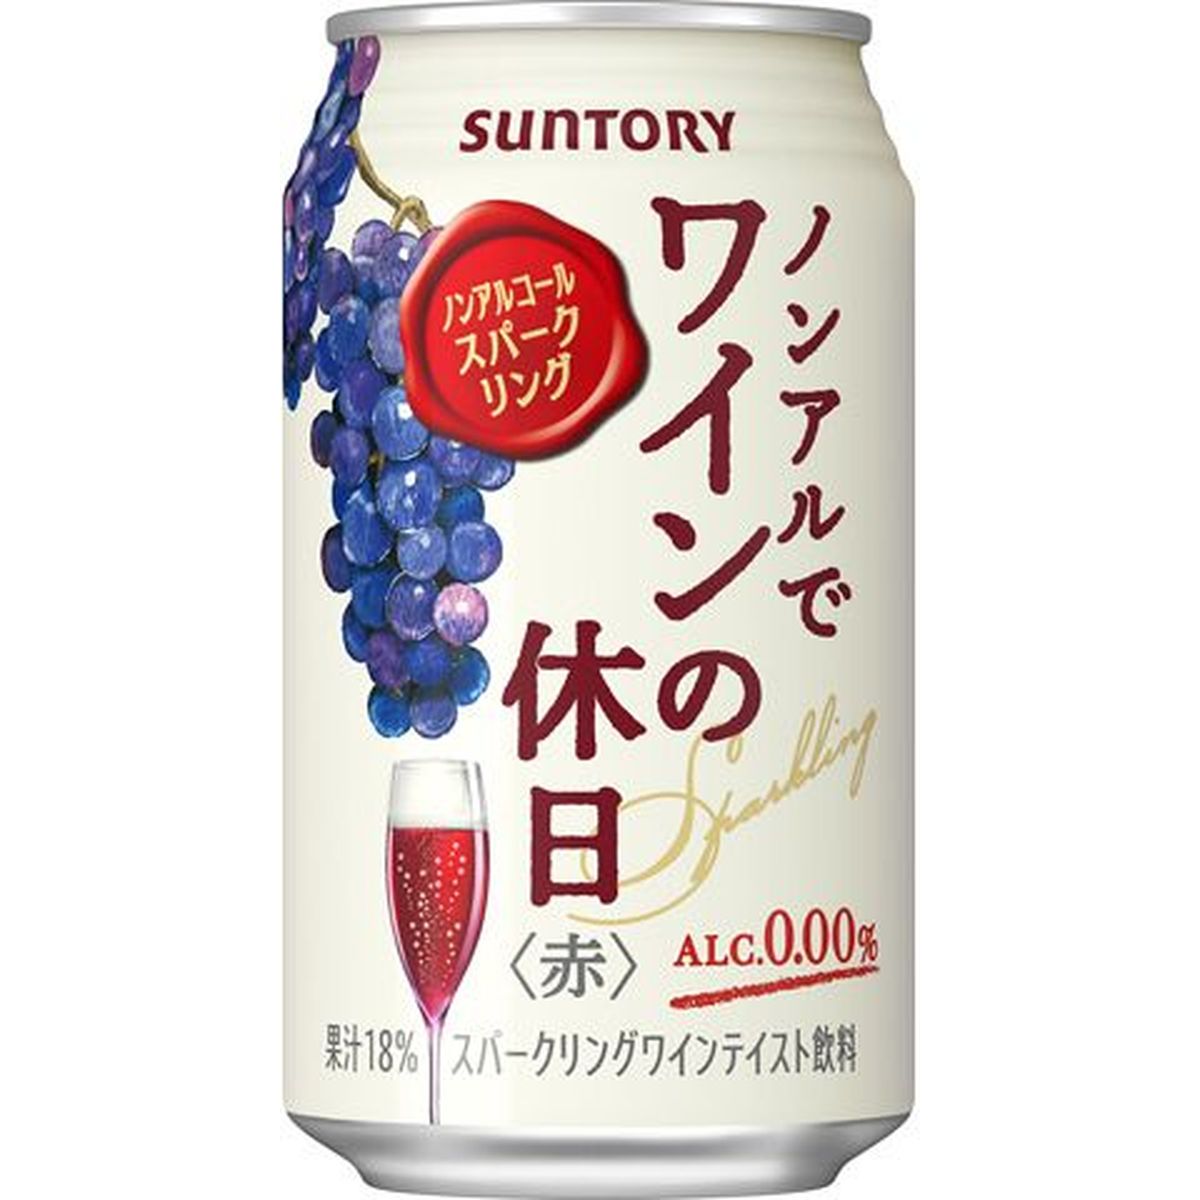 【24個入リ】サントリー ノンアルデワインノ休日 赤缶 350ml